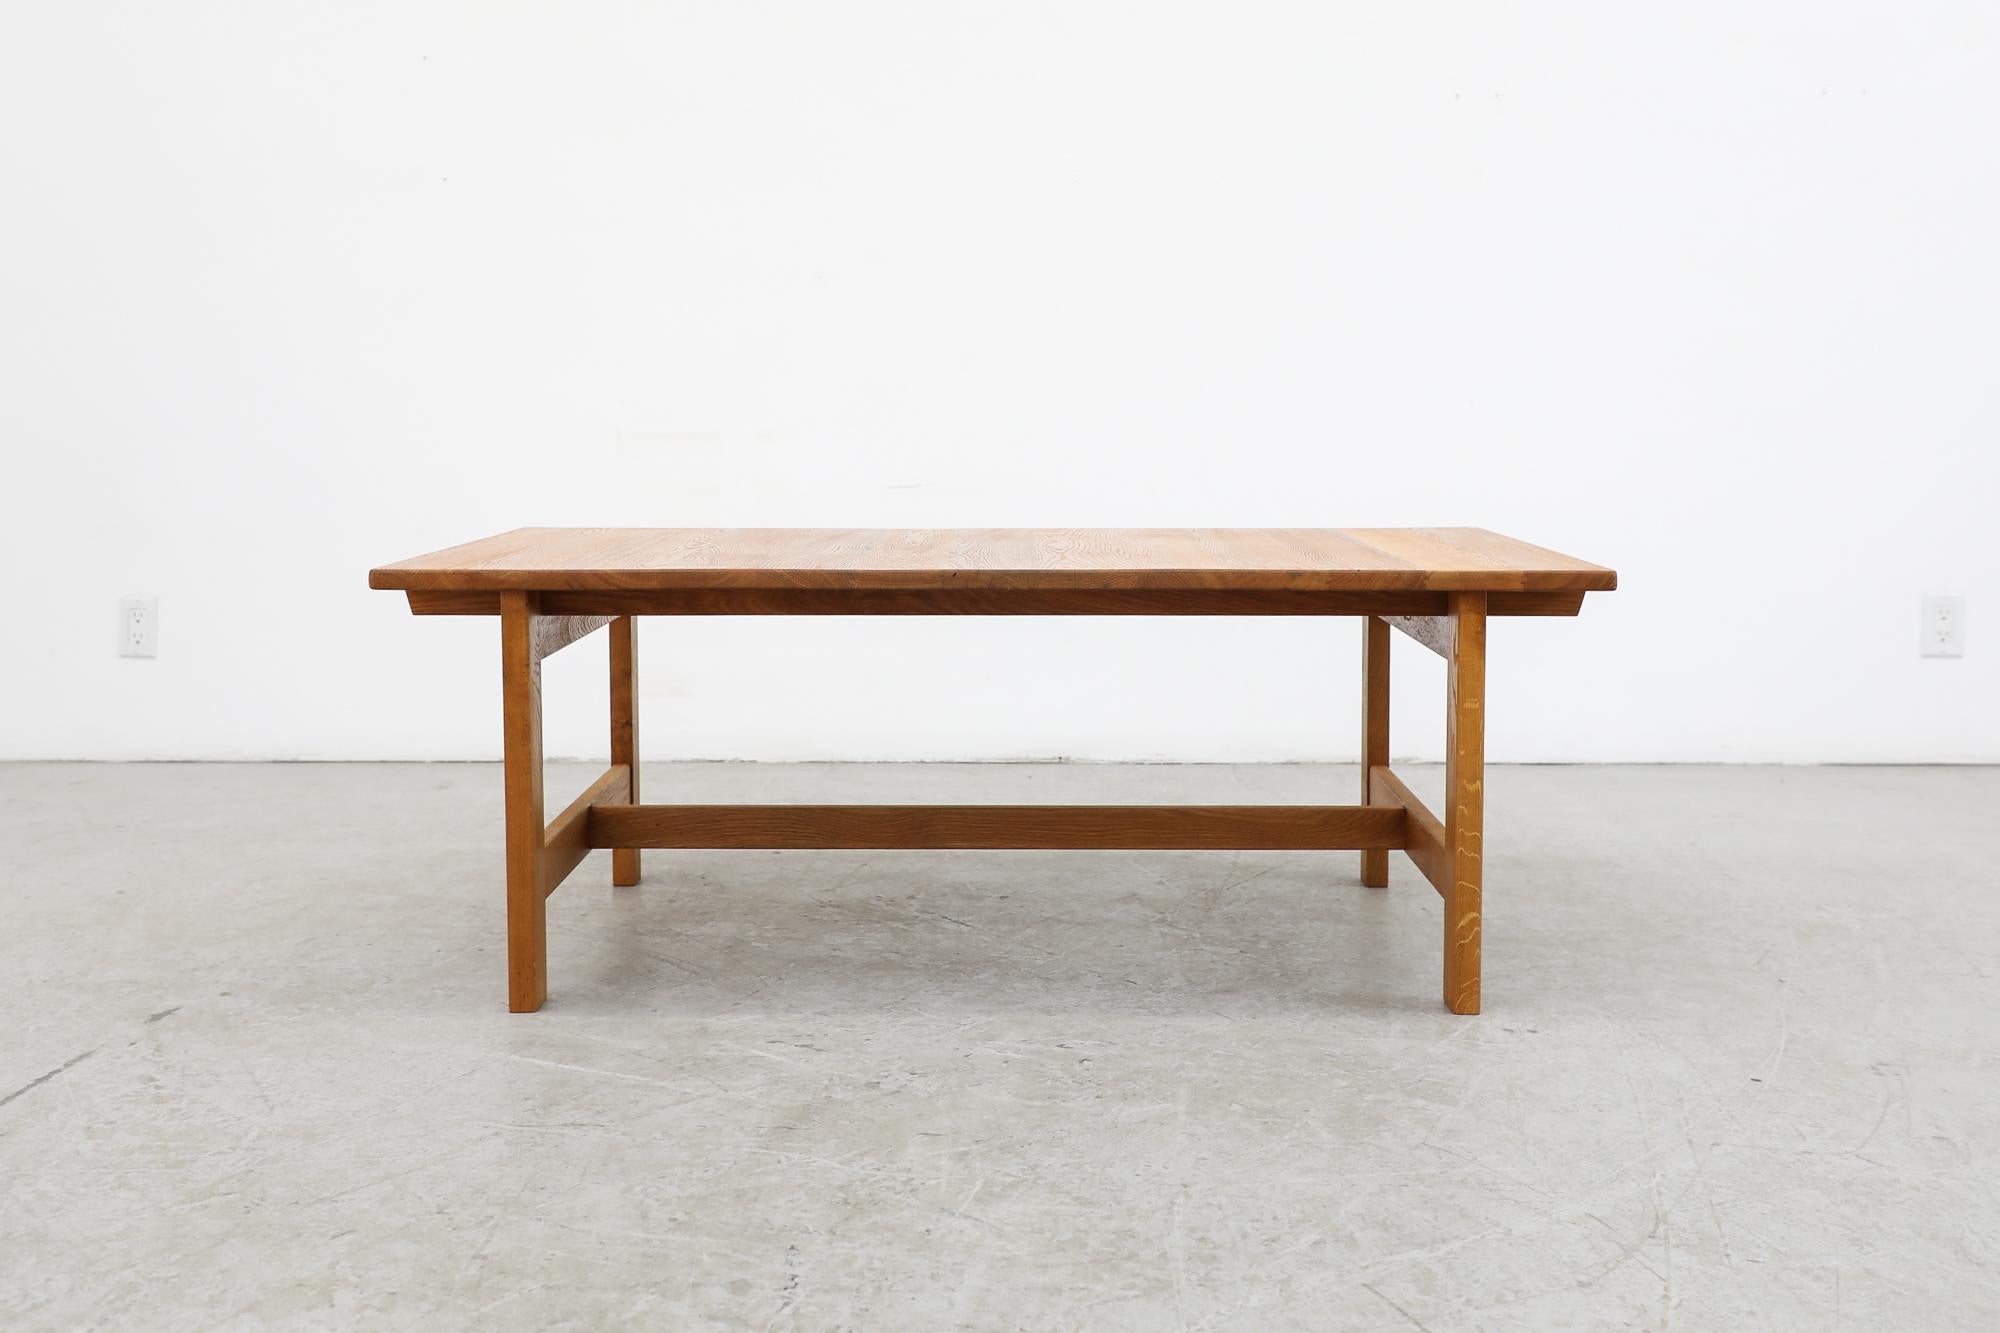 Grande table basse en chêne de Kurt Østervig, datant du milieu du siècle dernier, avec une belle structure carrée. En état d'origine avec une usure normale pour son âge. D'autres pièces de Kurt Østervig sont disponibles et listées séparément.